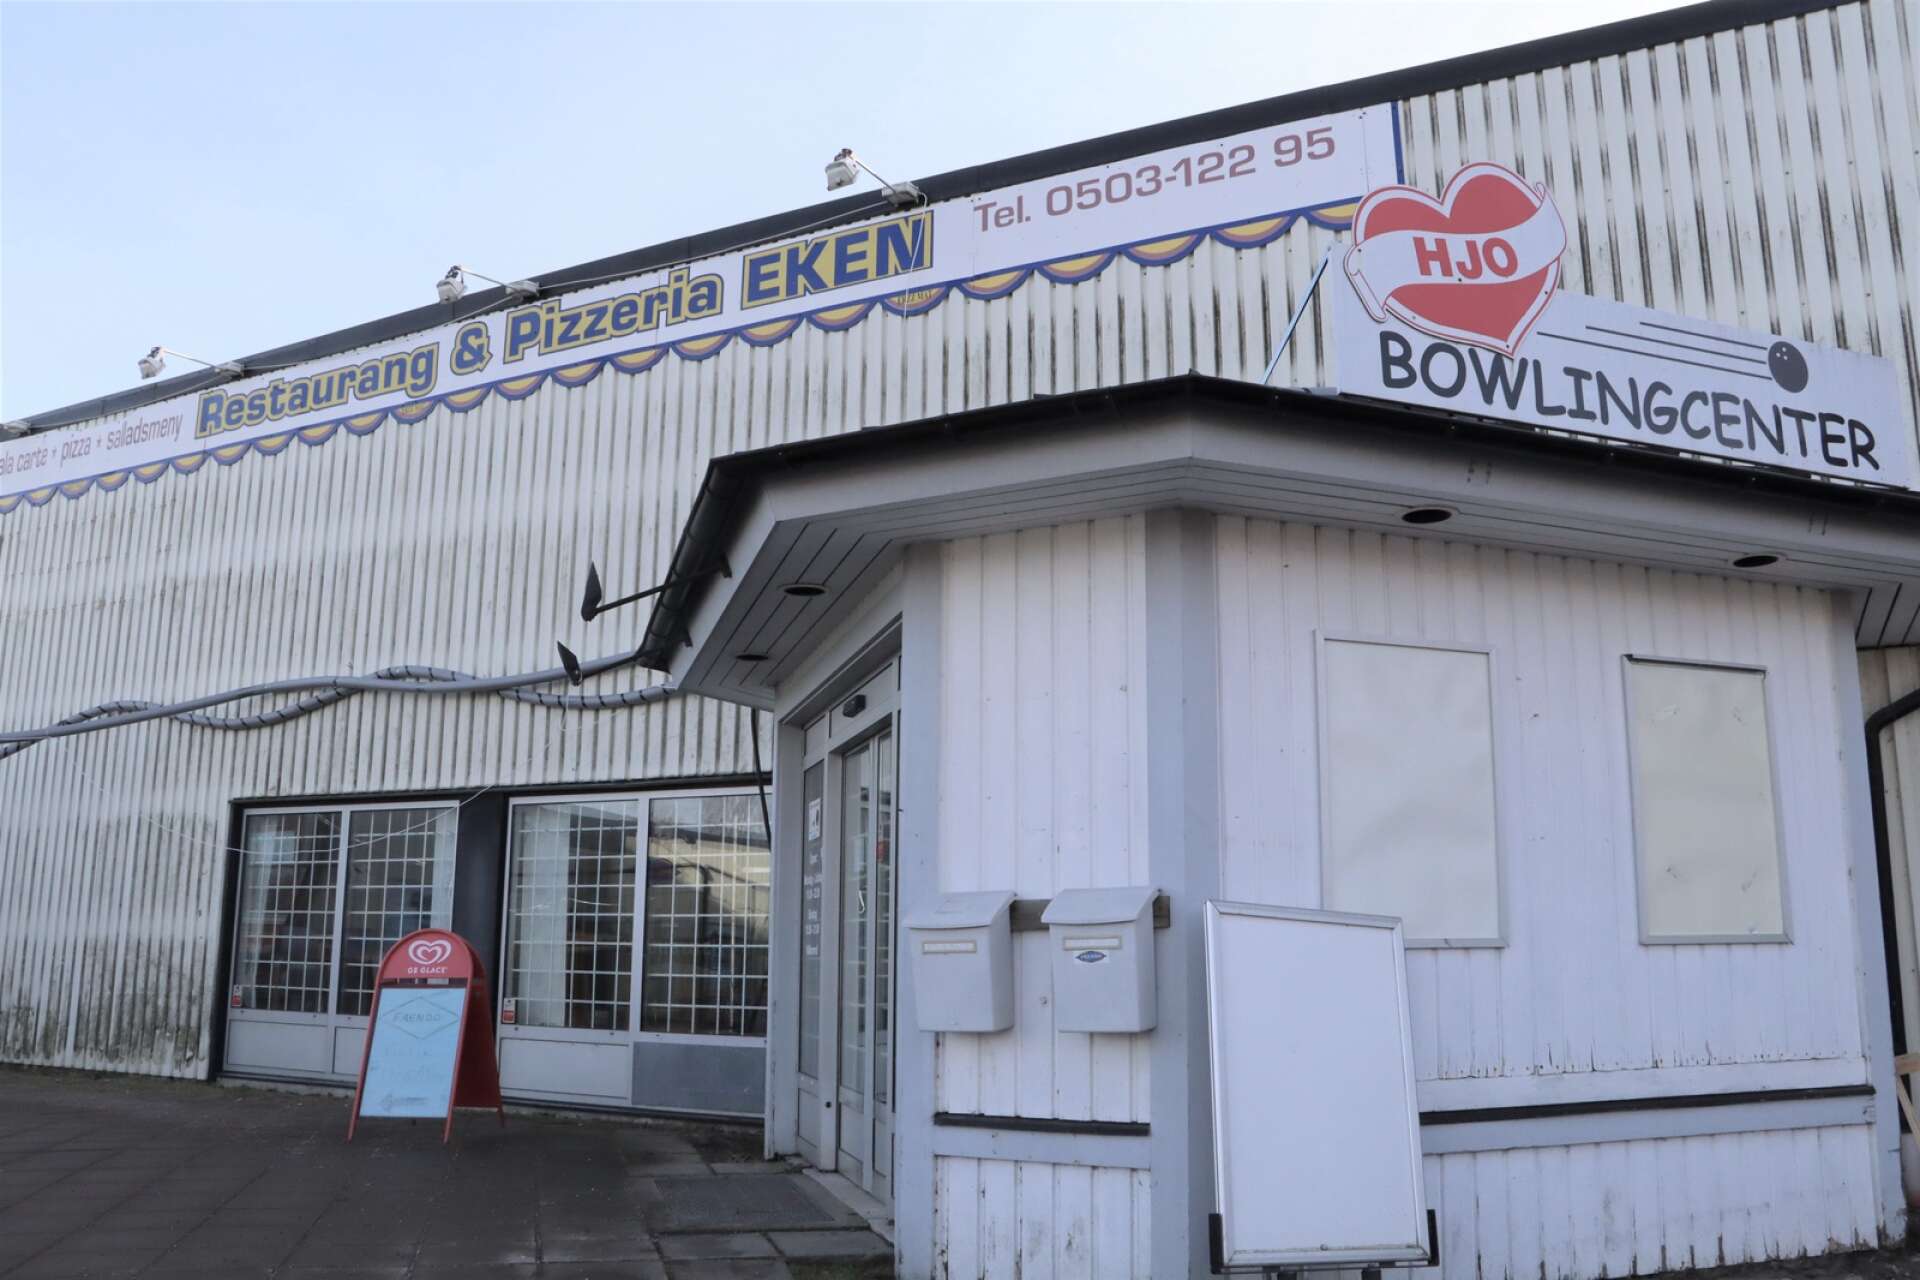 Hjo bowlingcenter och Restaurang &amp; Pizzeria Eken i Hjo mister sitt alkoholtillstånd. 